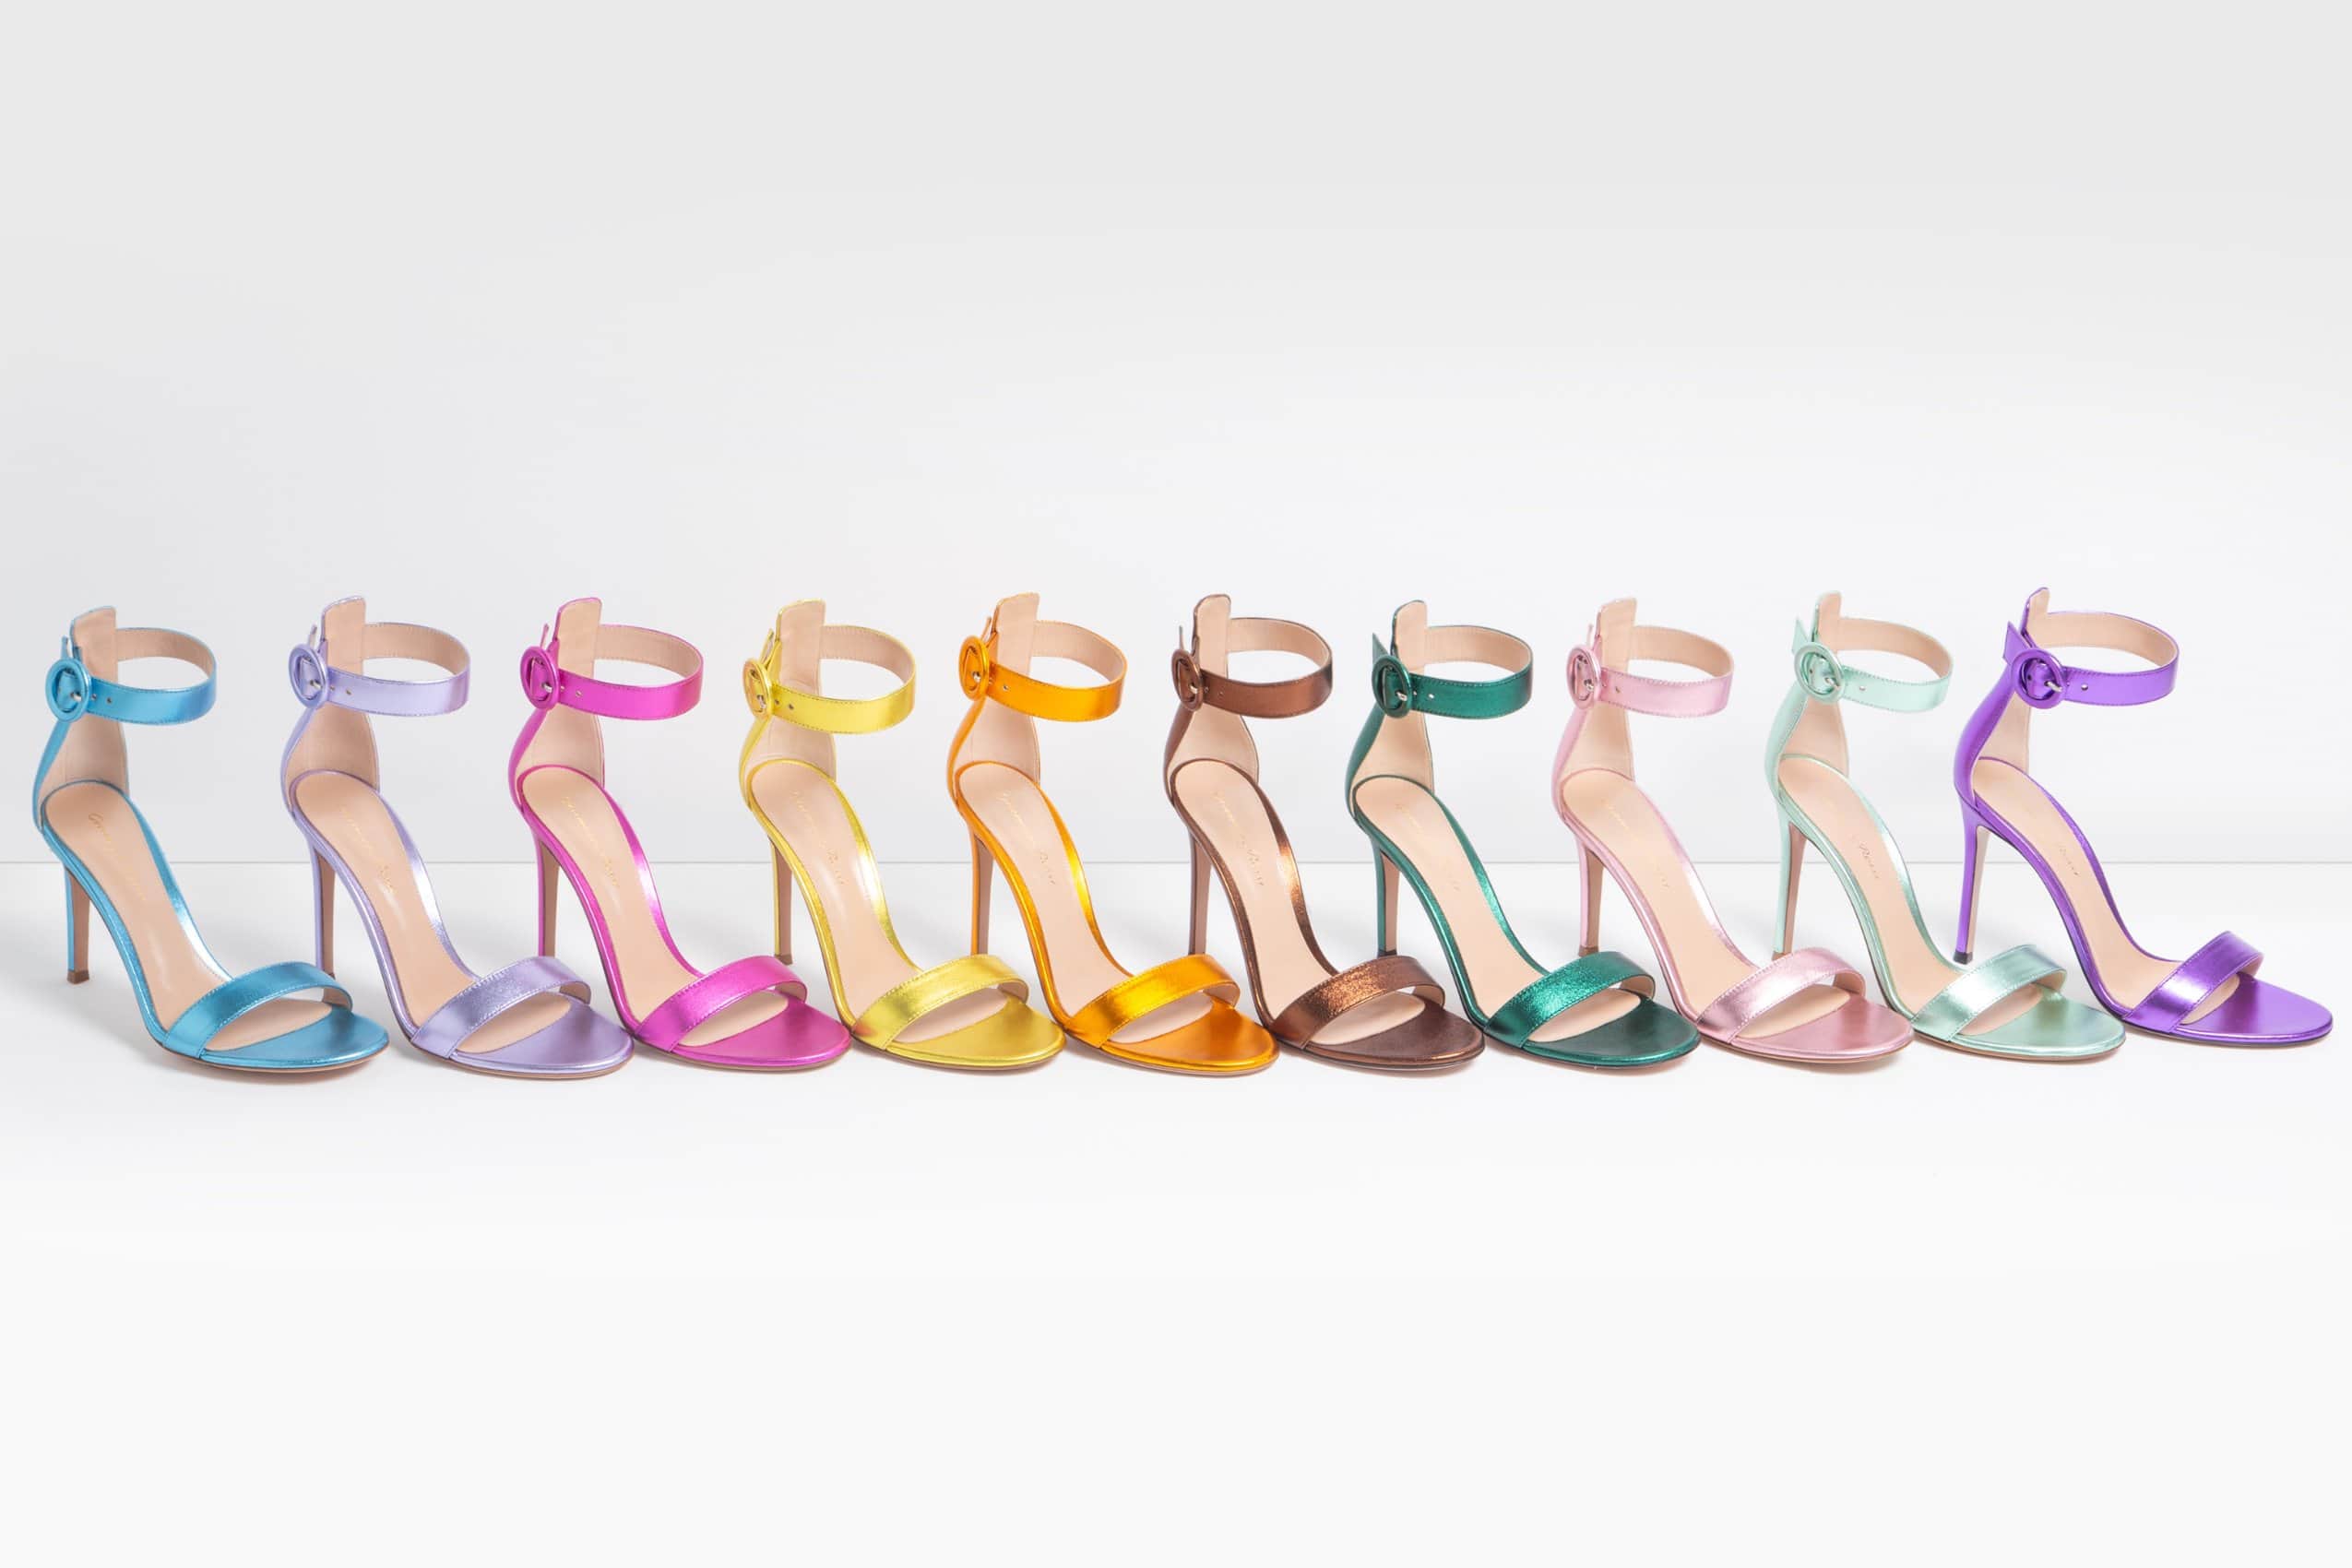 Gianvito Rossi's Colorful New Capsule Celebrates The Portofino Sandal